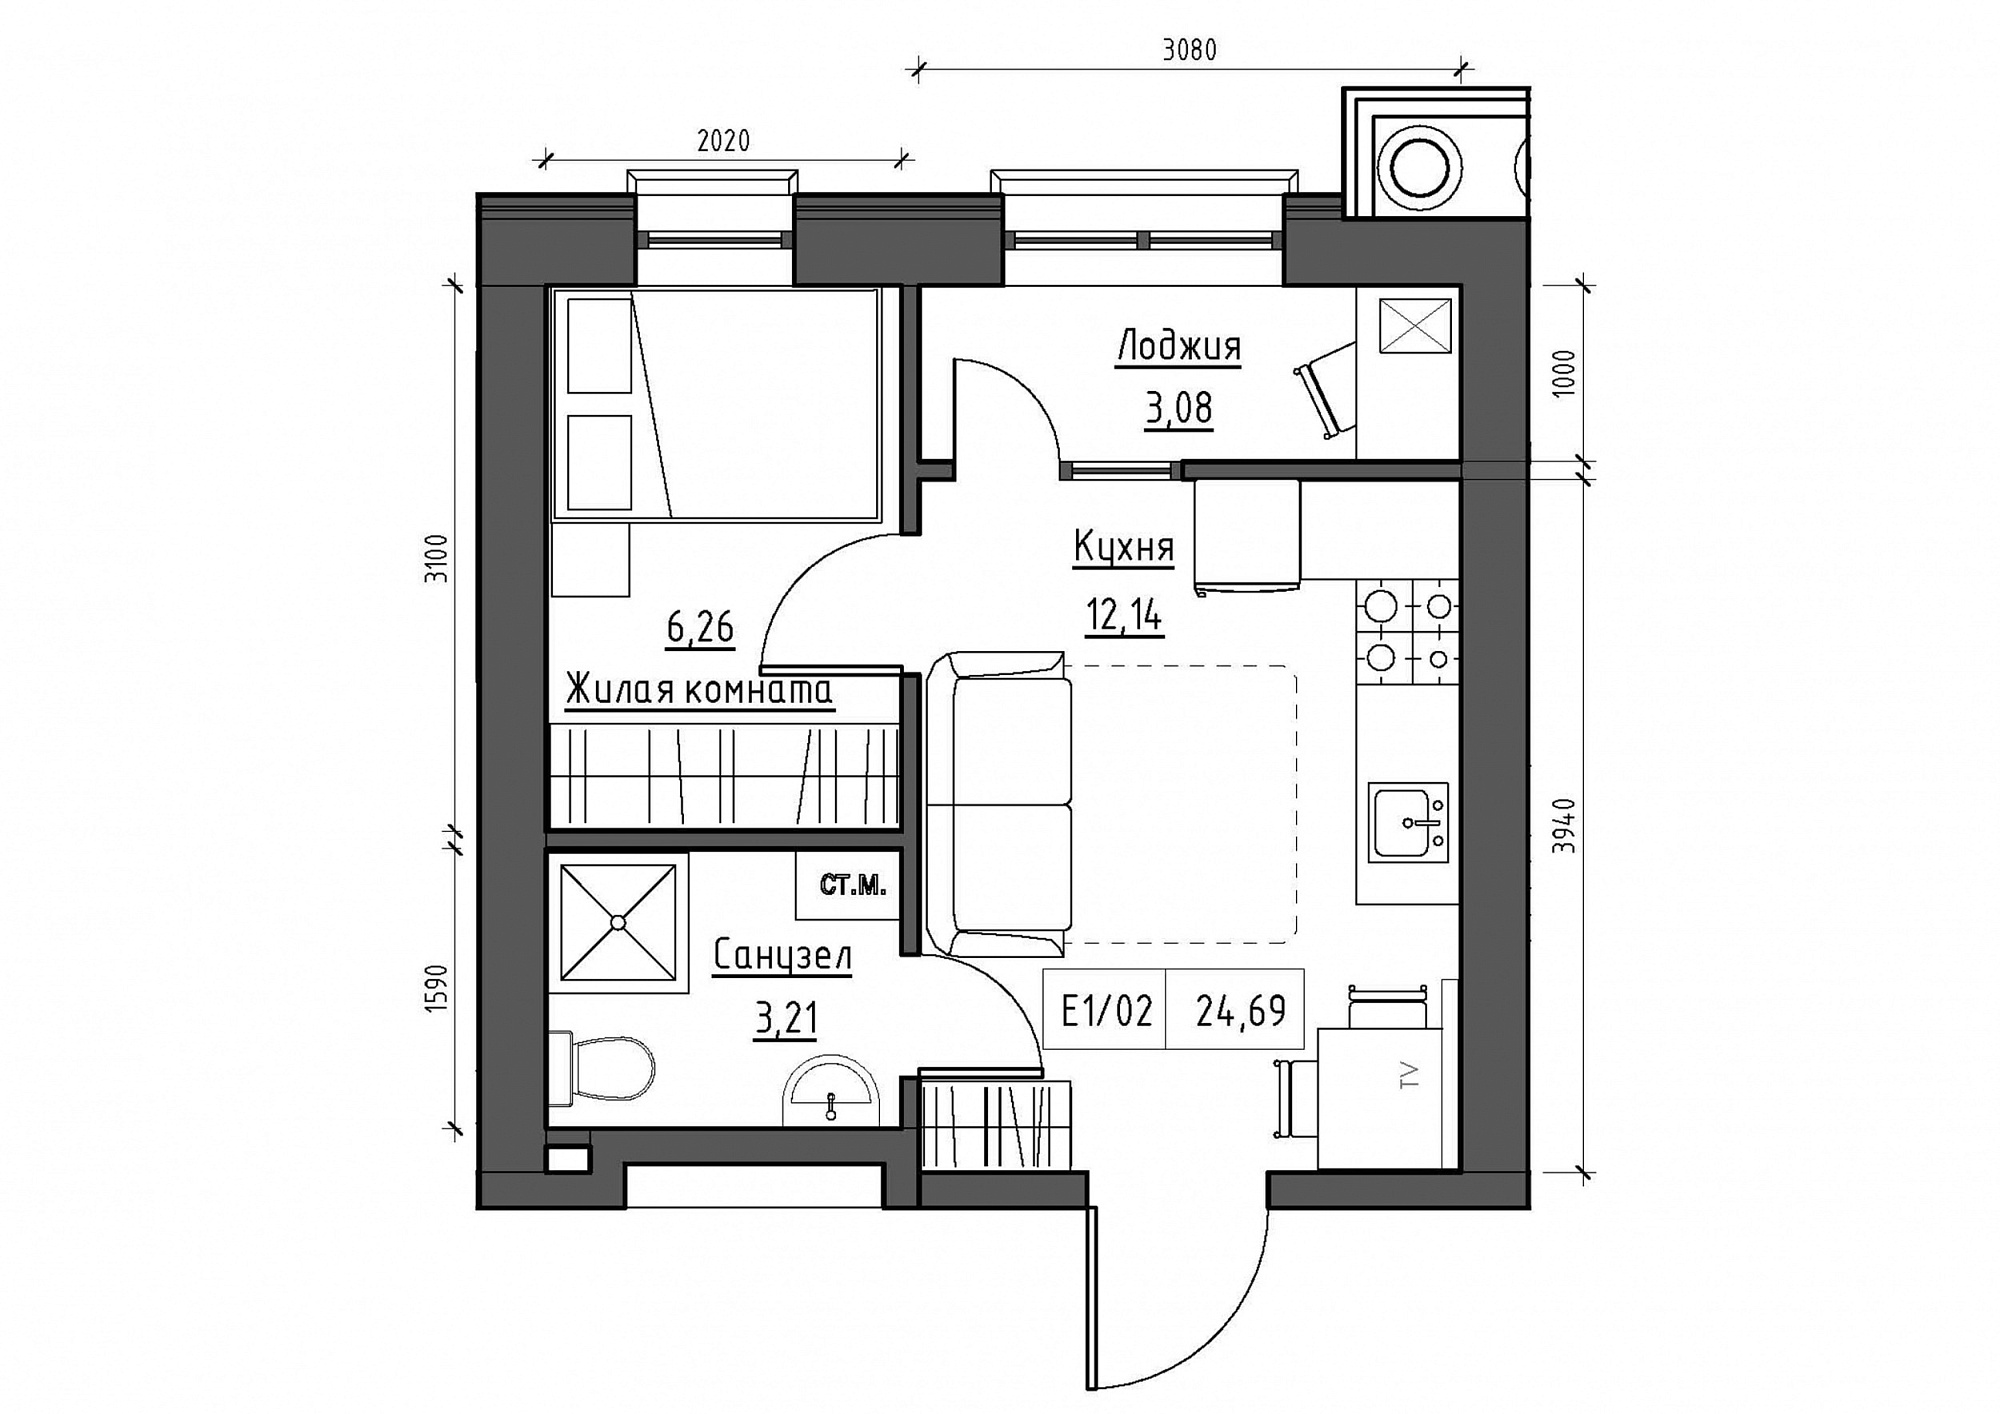 Планування 1-к квартира площею 24.69м2, KS-011-01/0014.